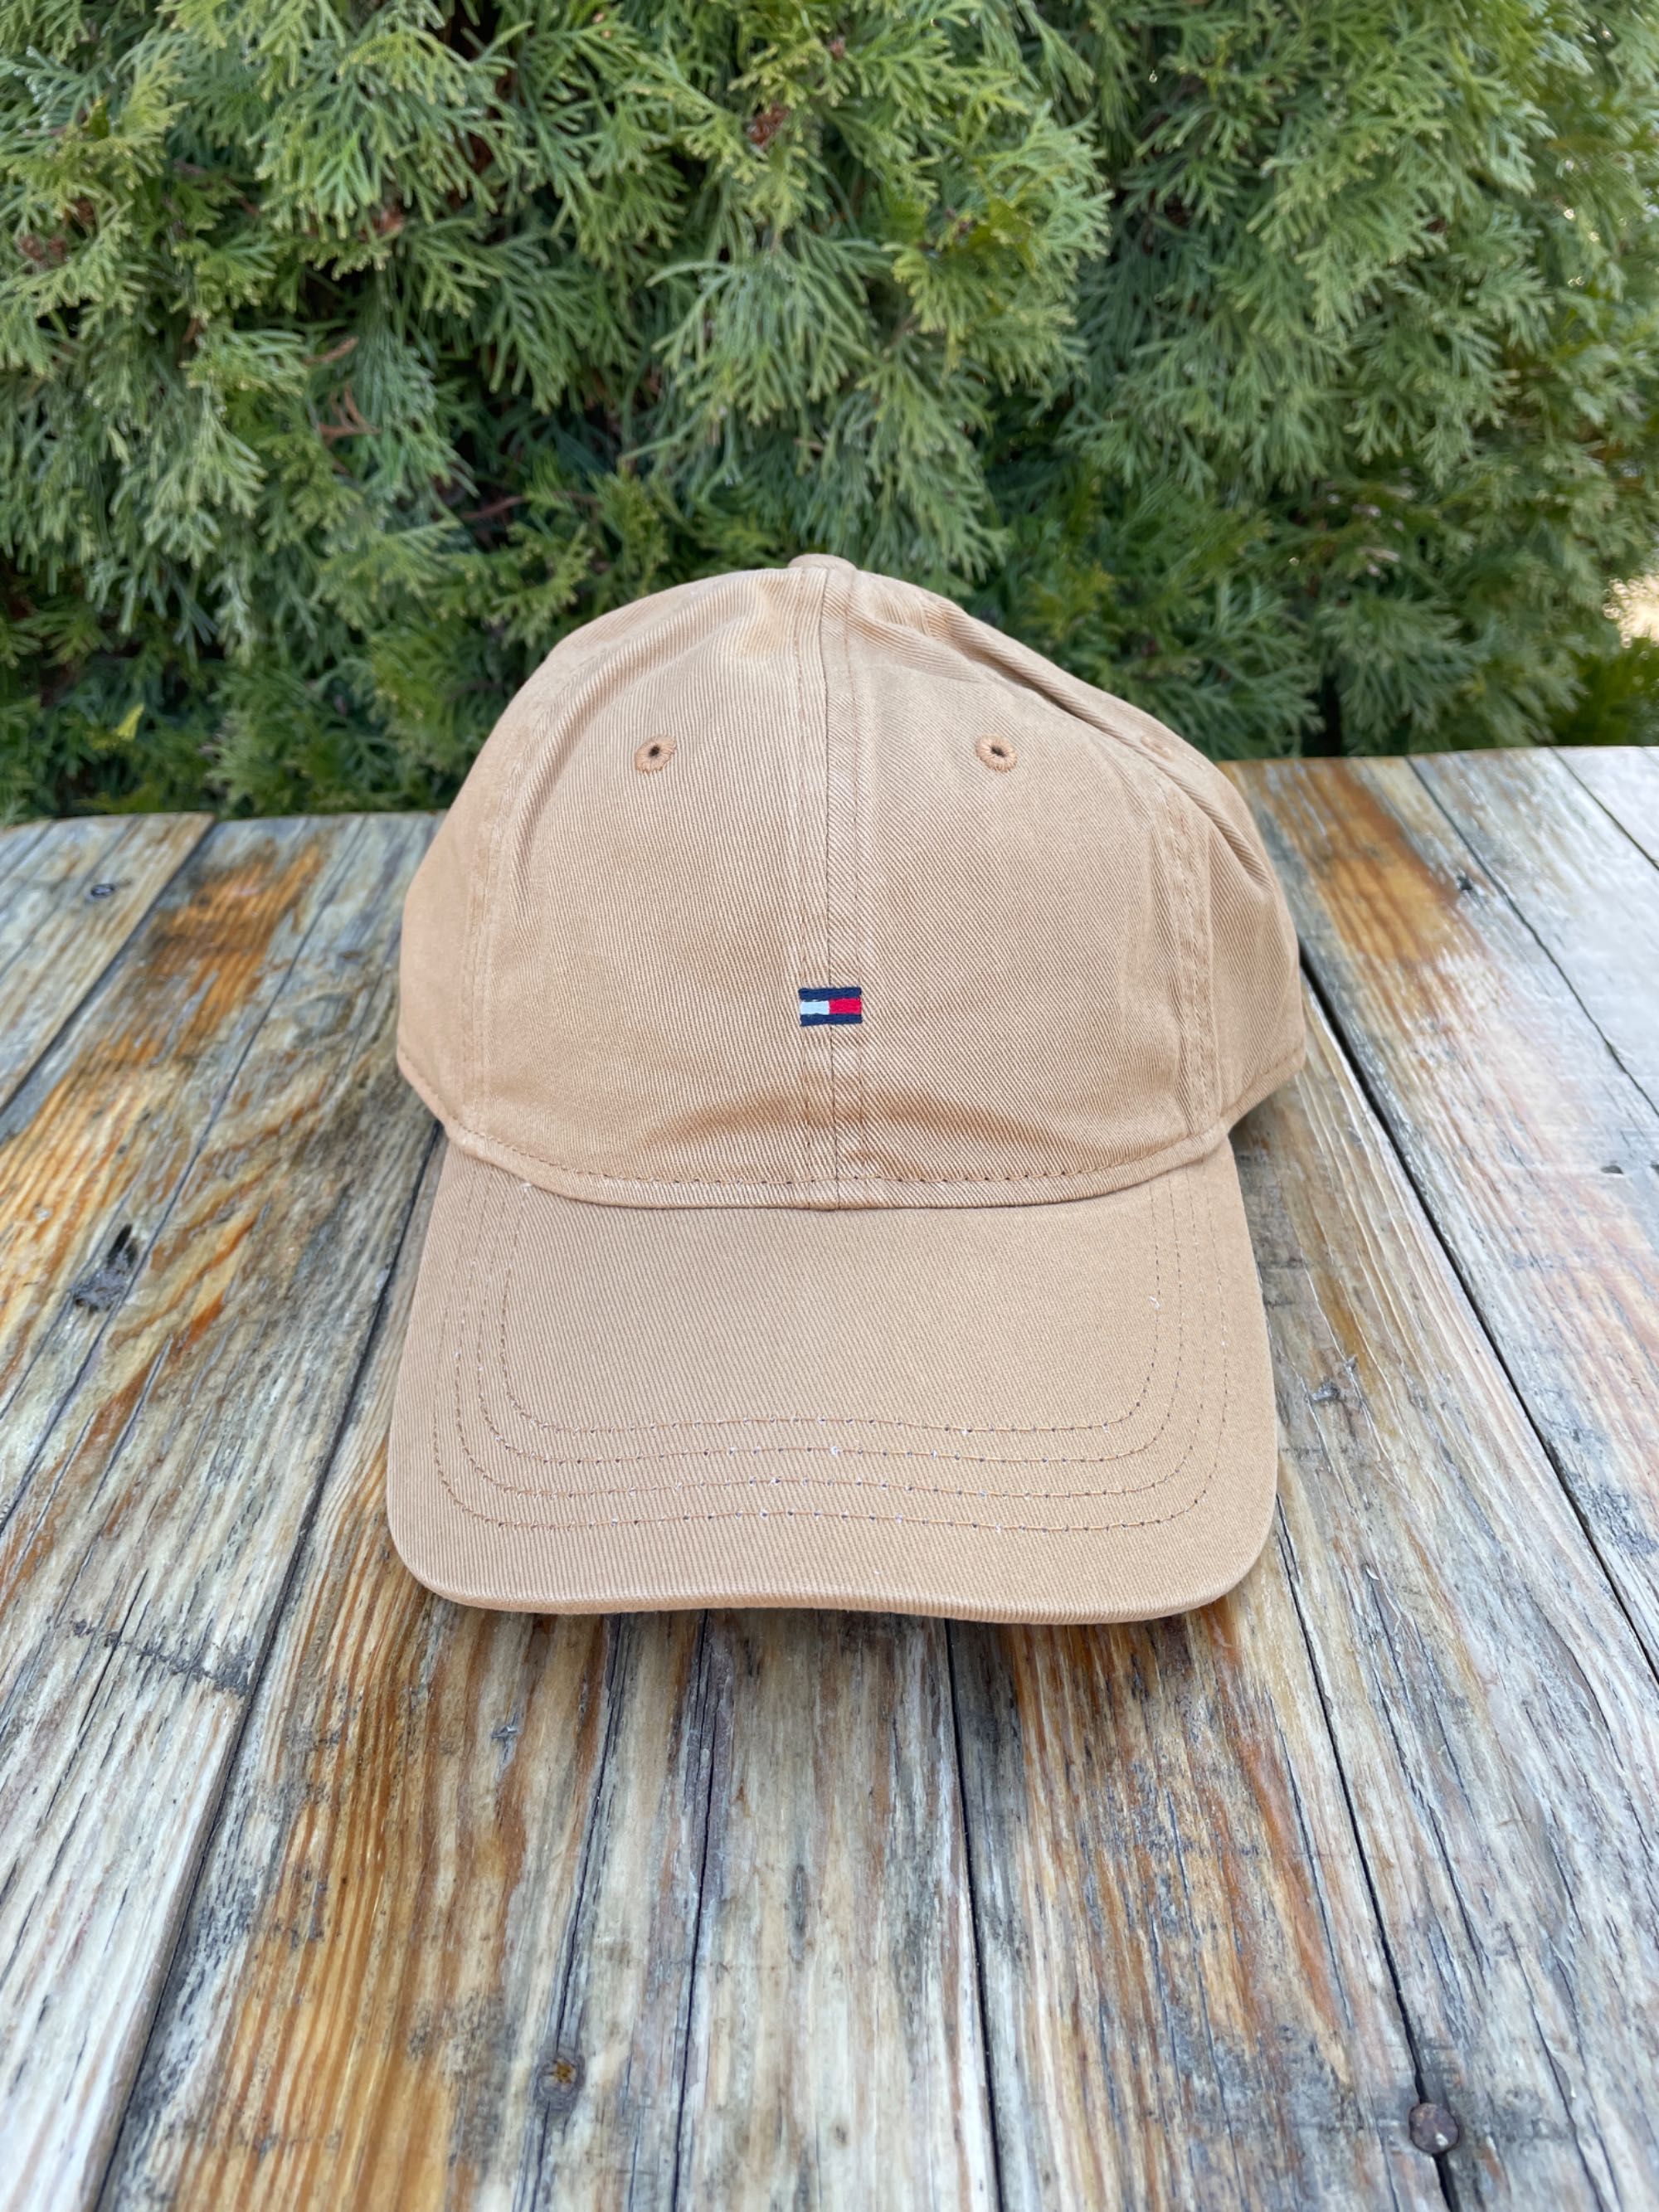 Новая кепка tommy hilfiger бейсболка (томми th flag logo cap)с америки